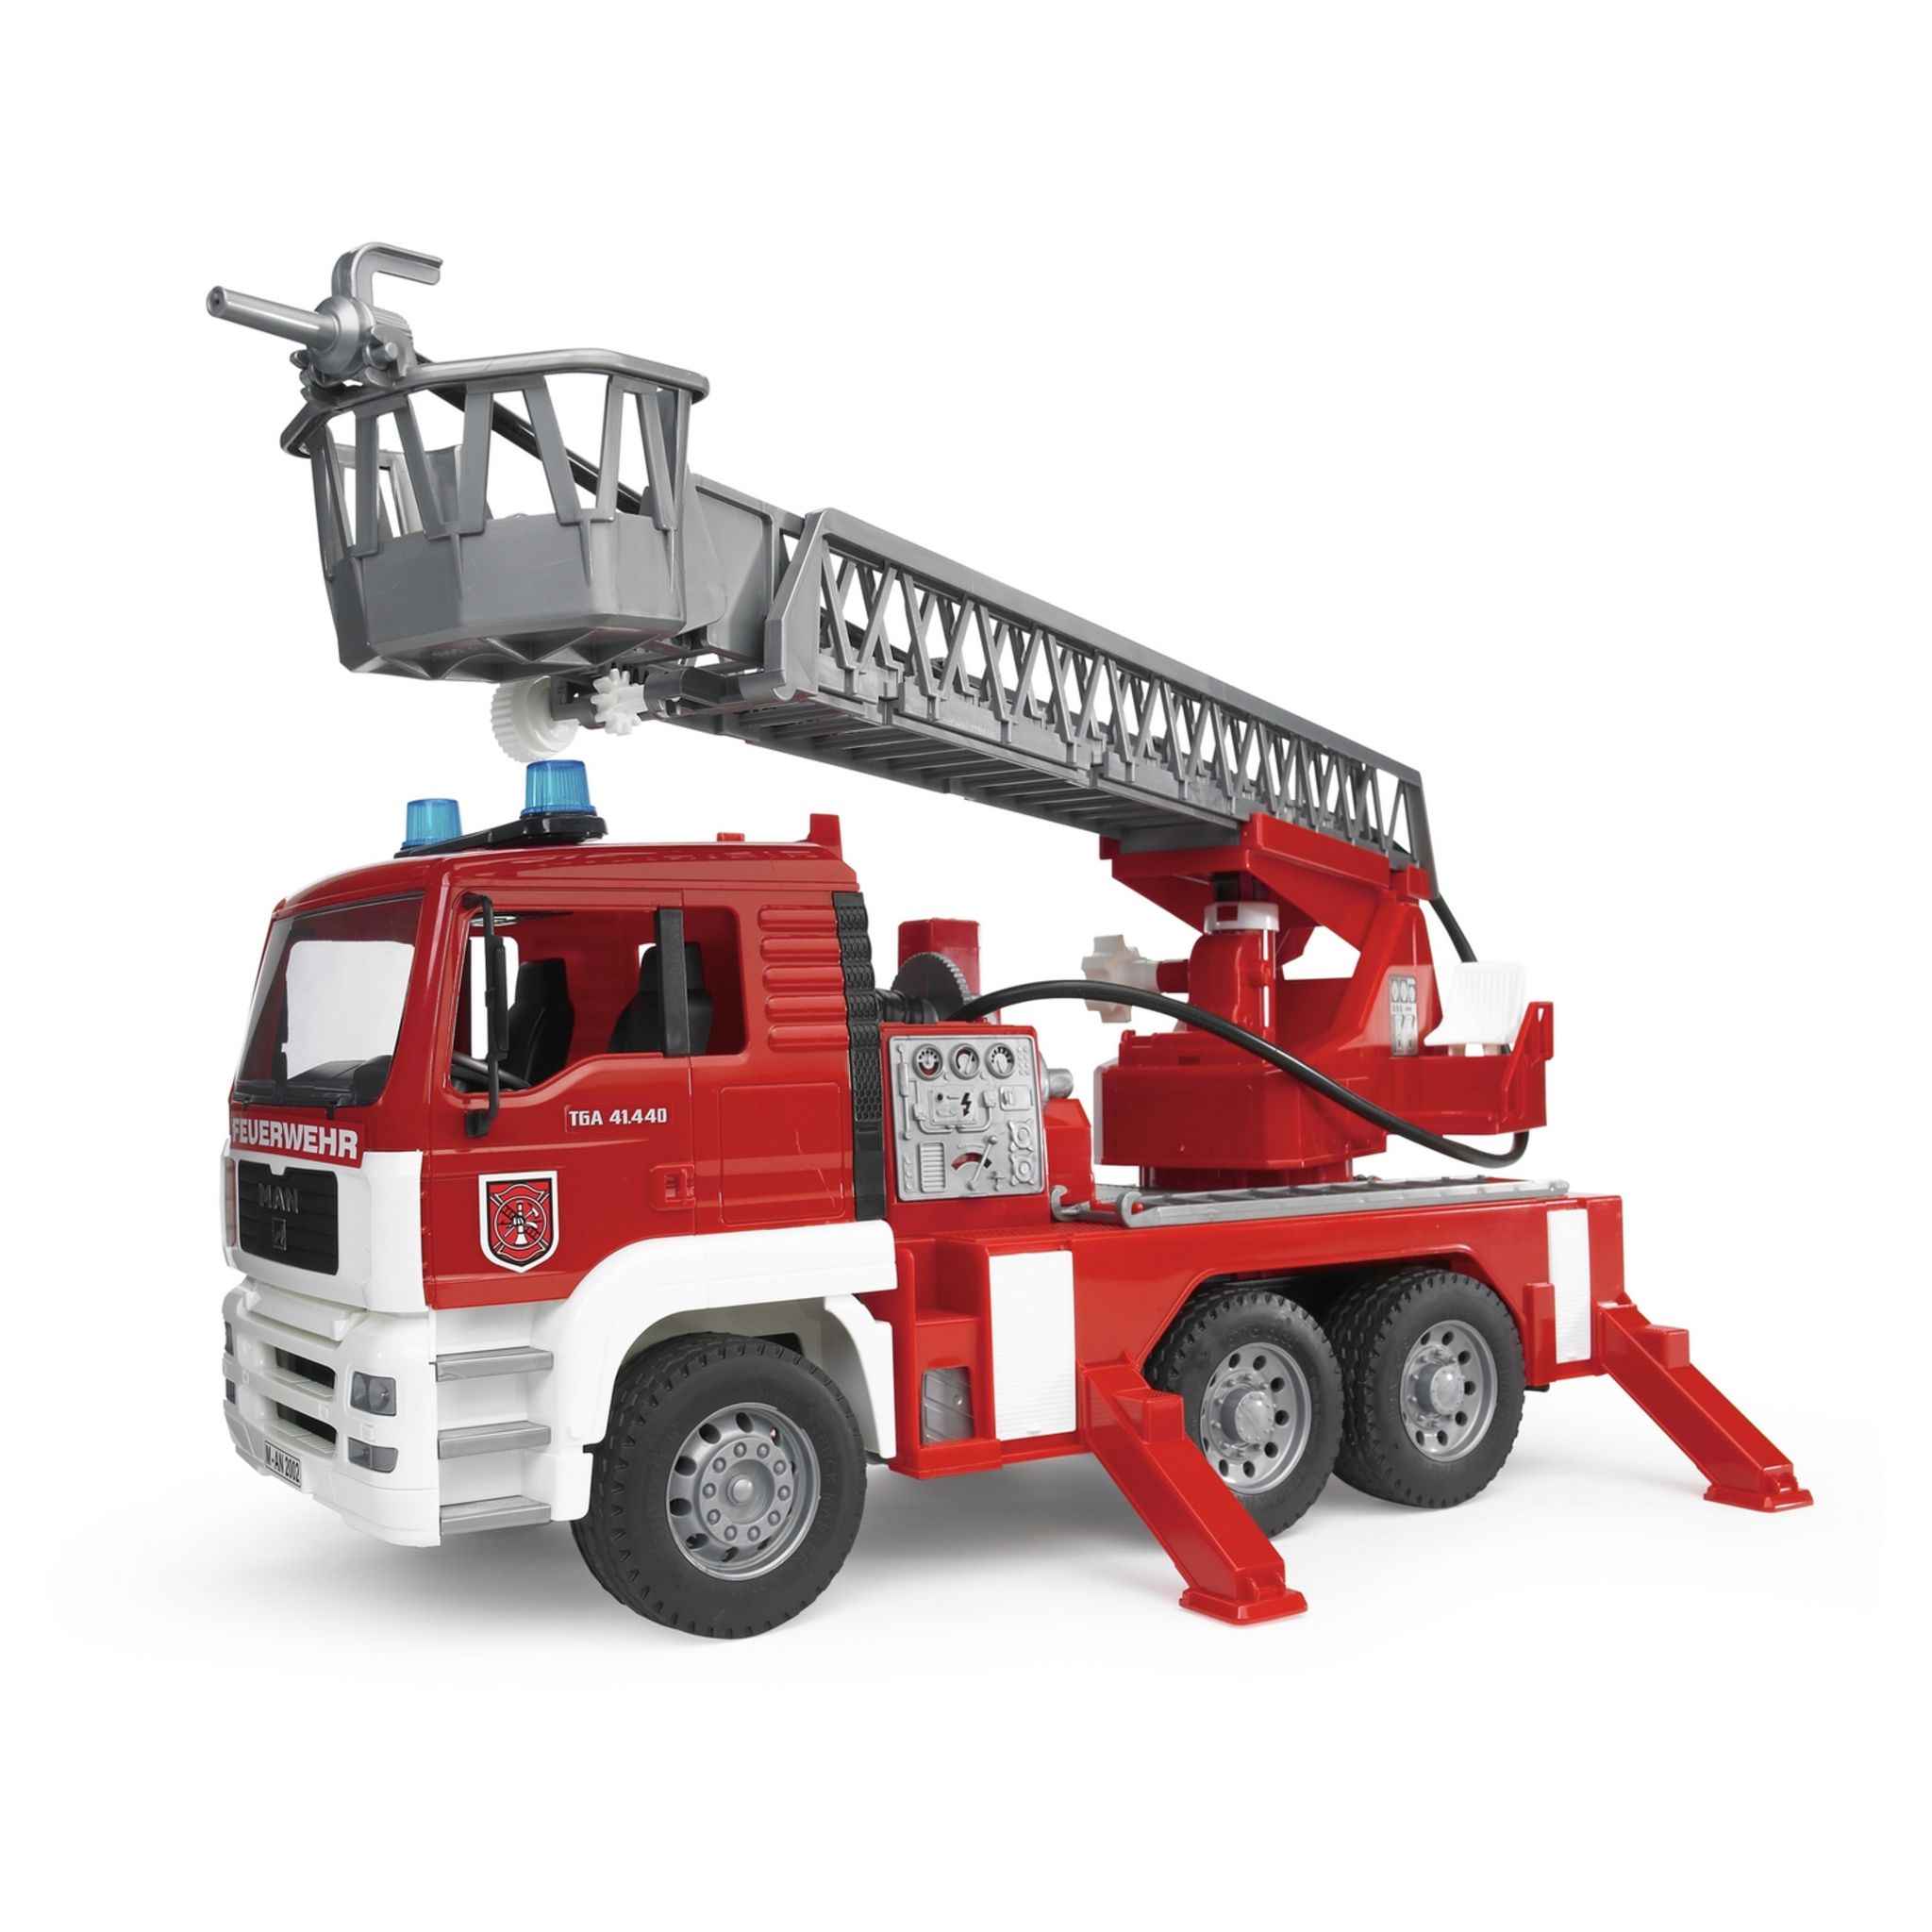 Playmobil® 1.2.3 - Camion de pompier avec échelle pivotante - 6967